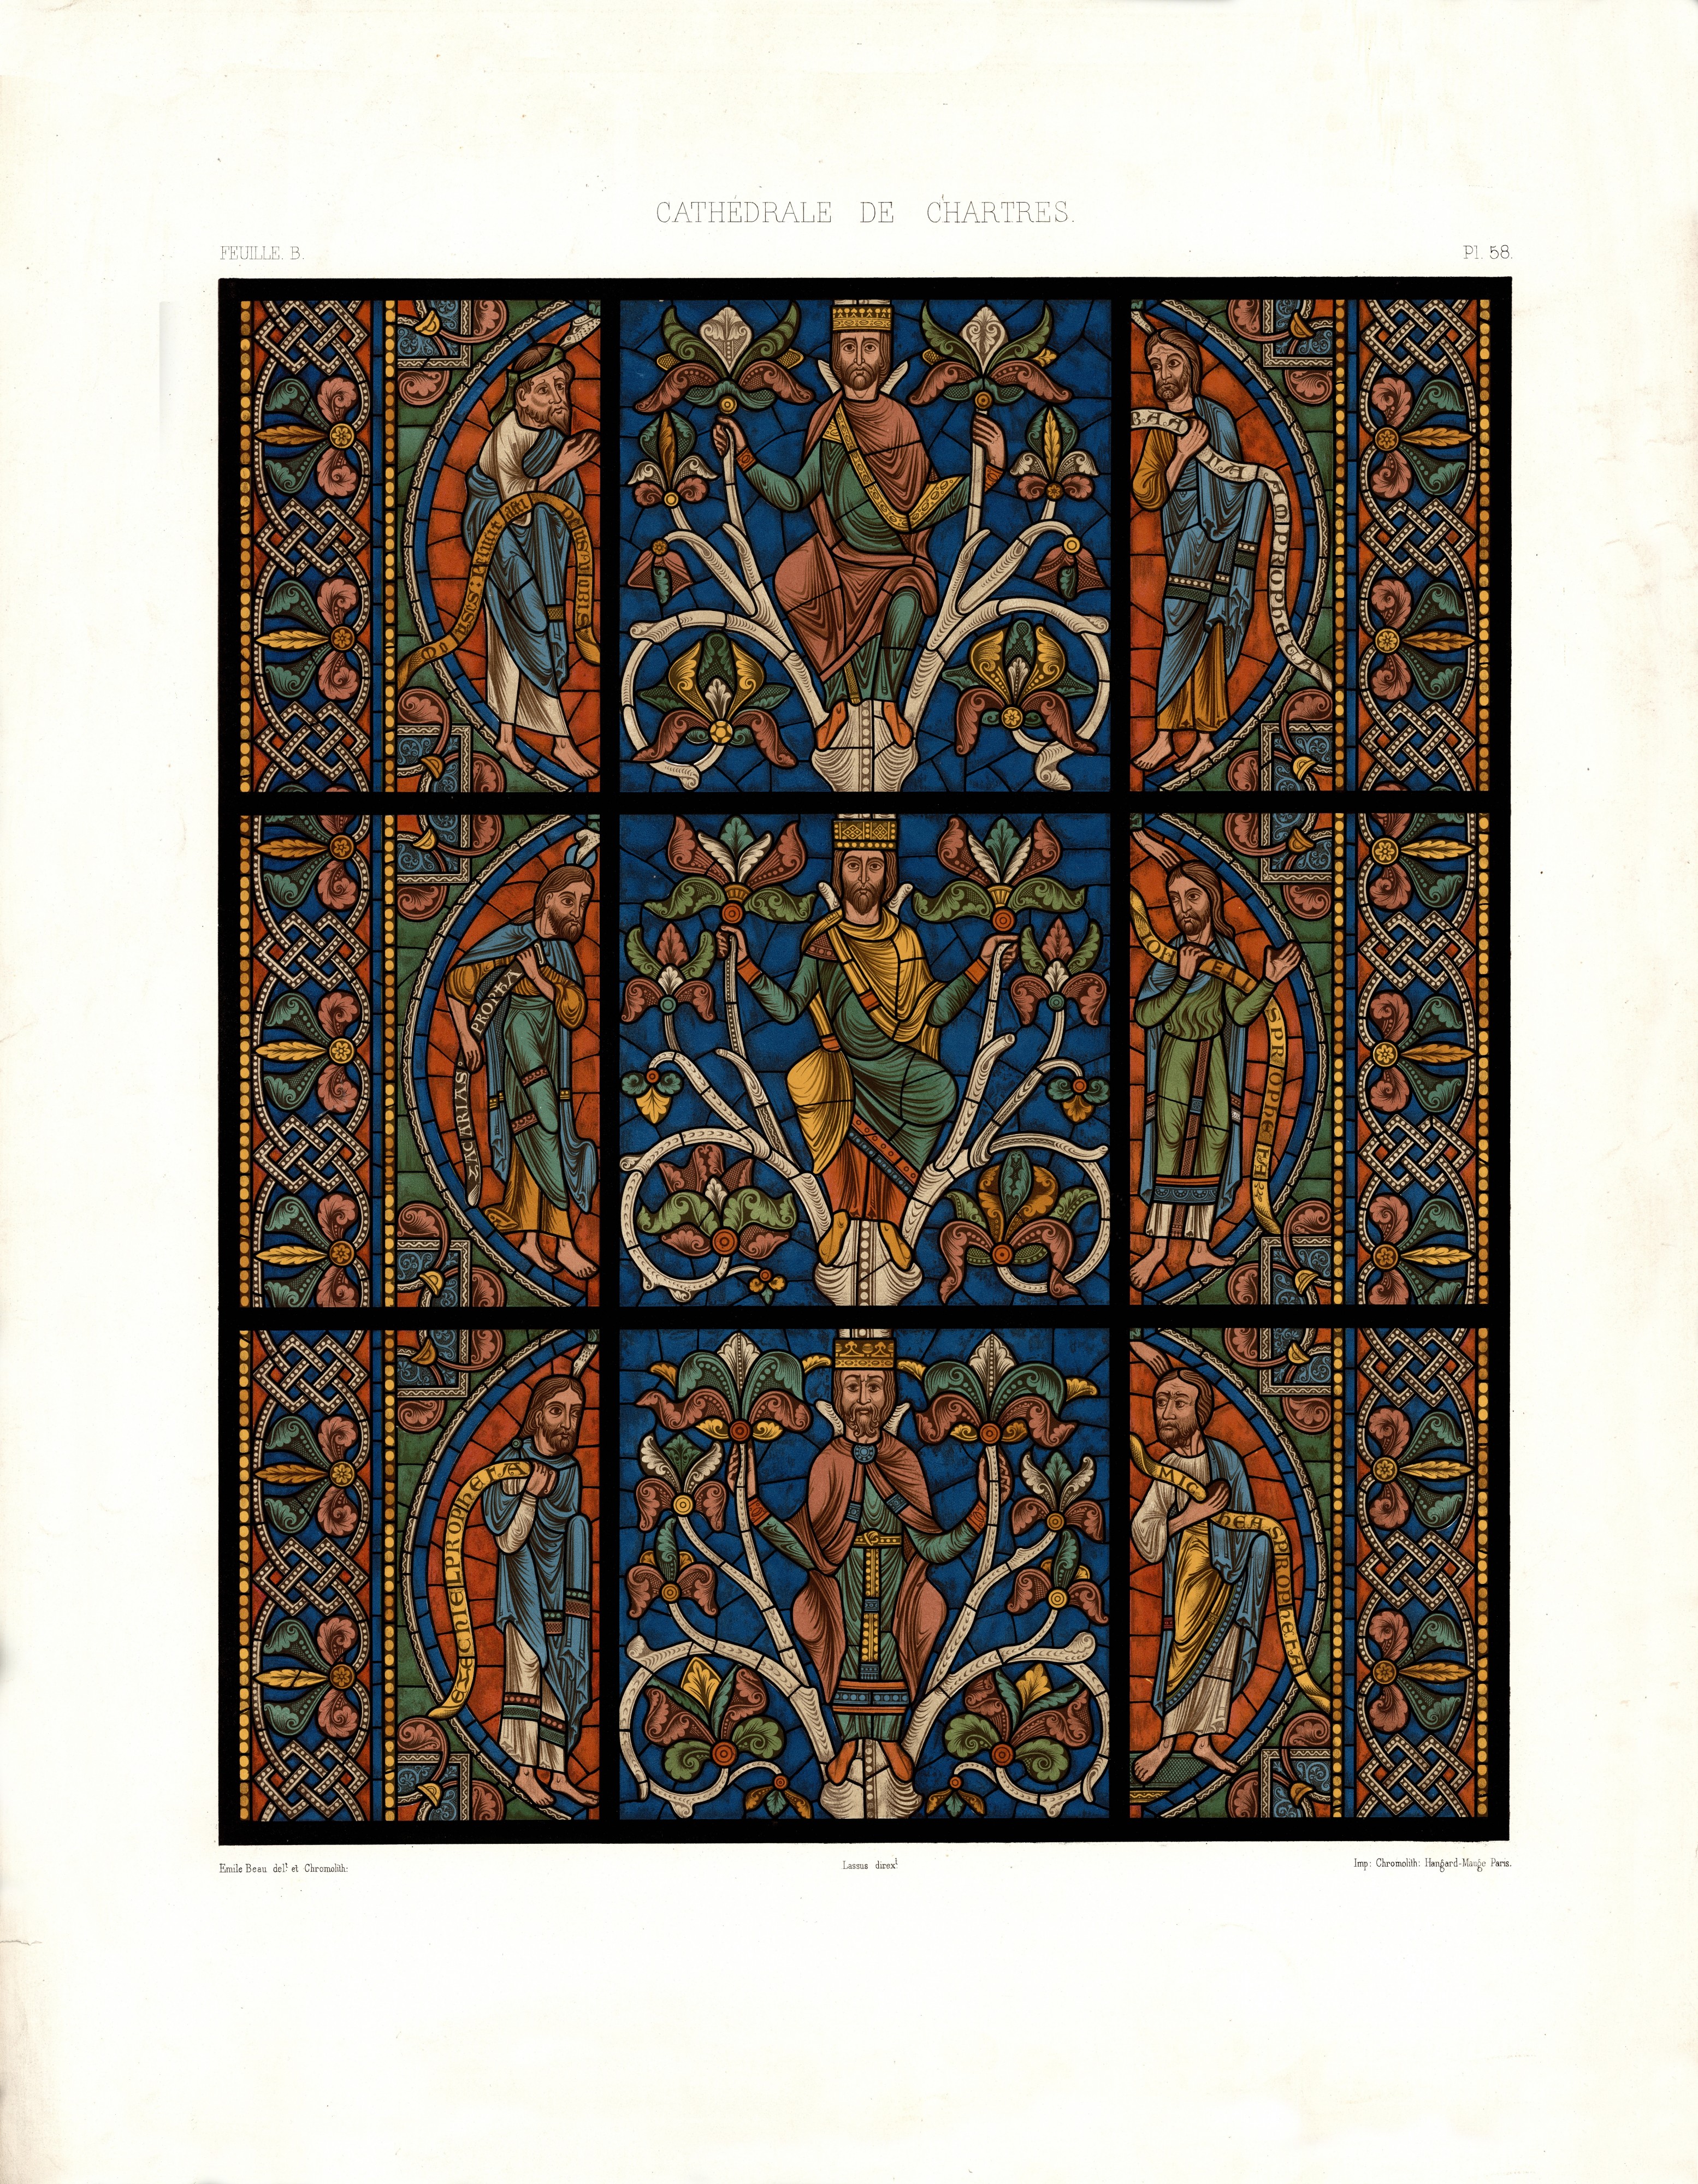 Monografie de la Cathedrale de Chartres - Atlas - Vitrail del arbre de Jesse Feuille B - Chromolithographie